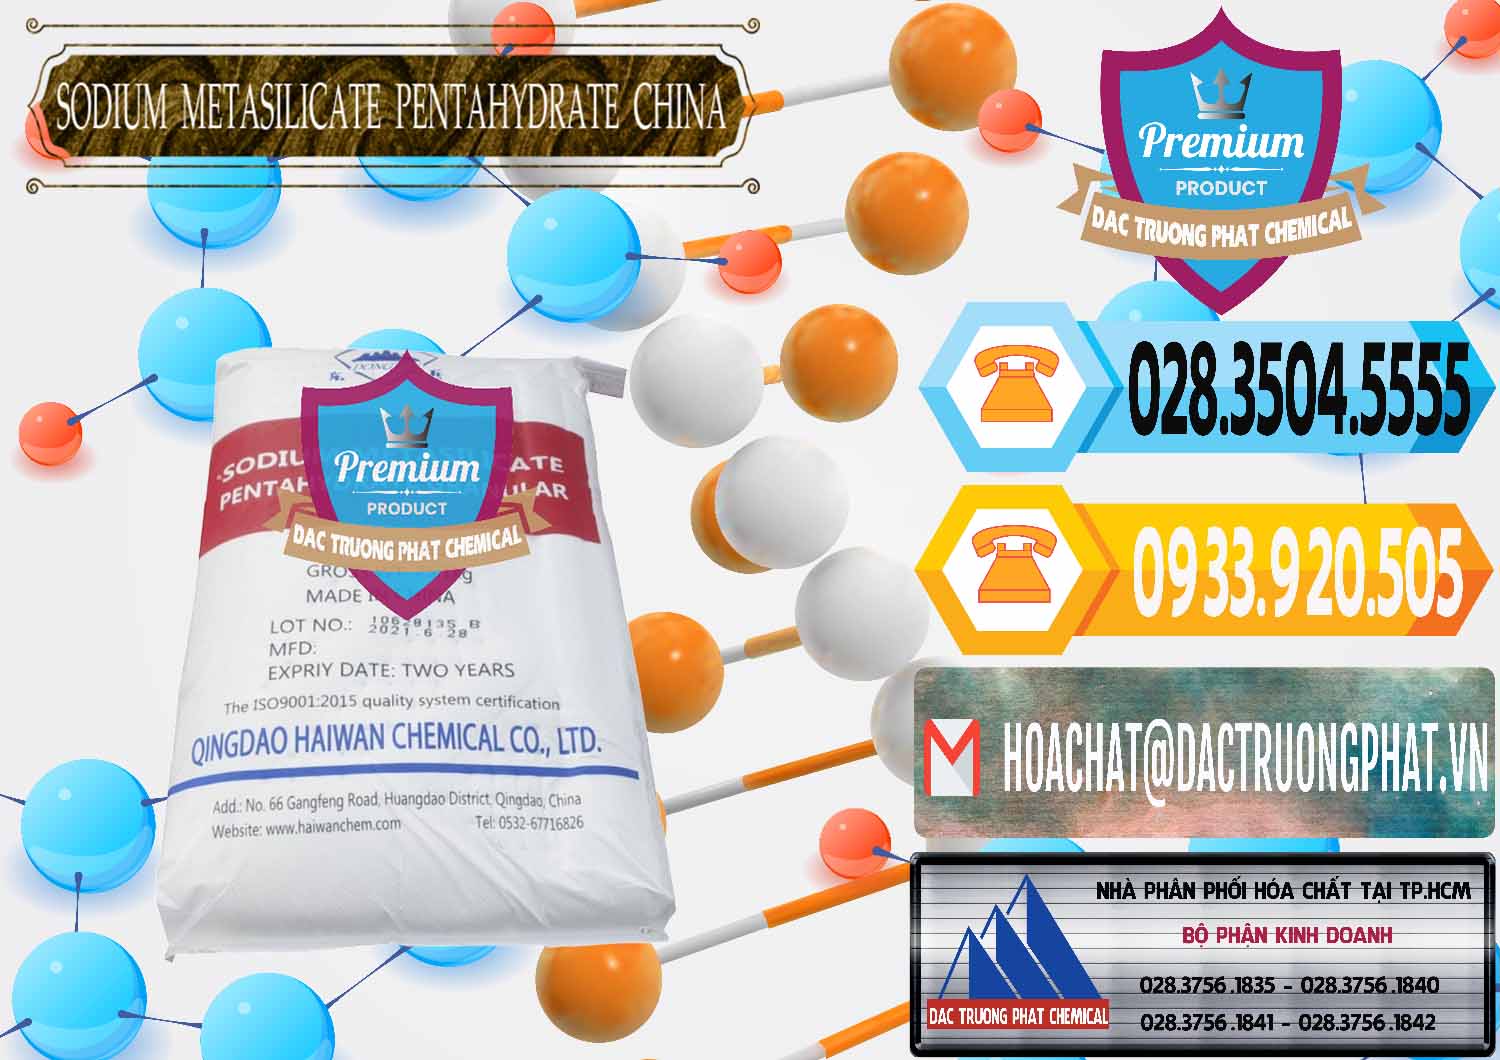 Công ty chuyên bán - cung cấp Sodium Metasilicate Pentahydrate – Silicate Bột Qingdao Trung Quốc China - 0452 - Nơi chuyên bán ( cung cấp ) hóa chất tại TP.HCM - hoachattayrua.net